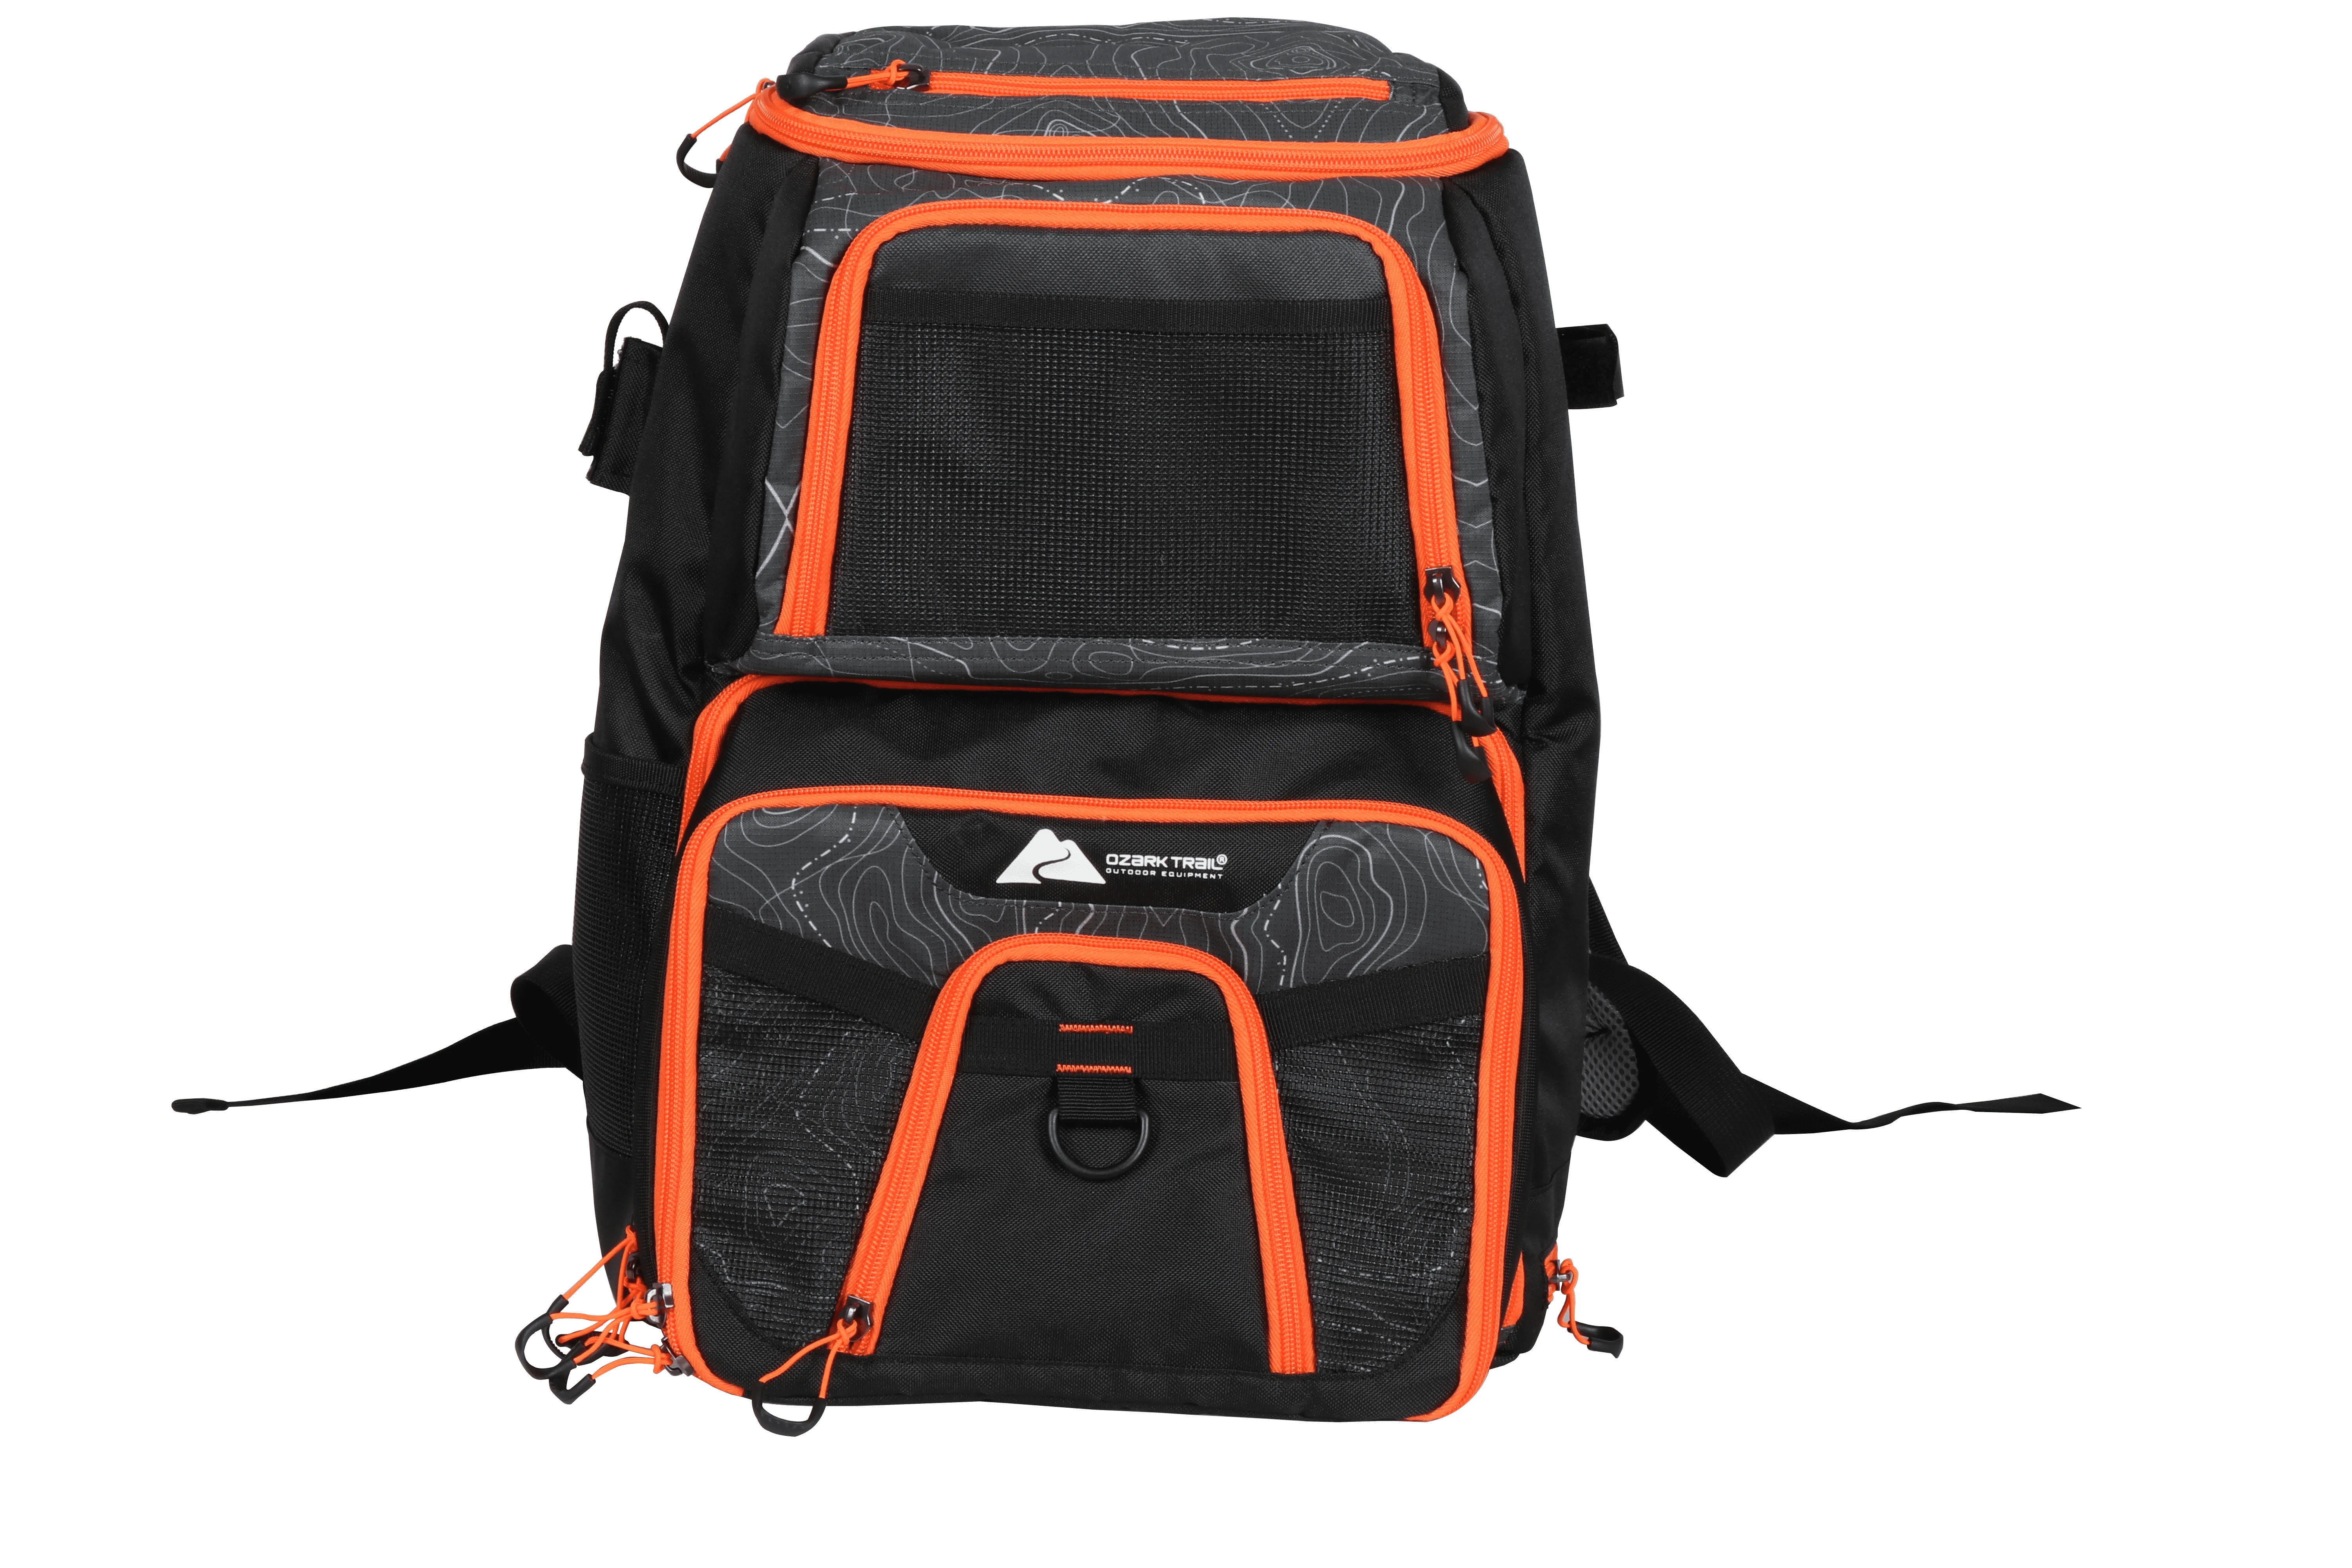 

Ozark Trail Elite Fishing Tackle Backpack with Bait Cooler, Black